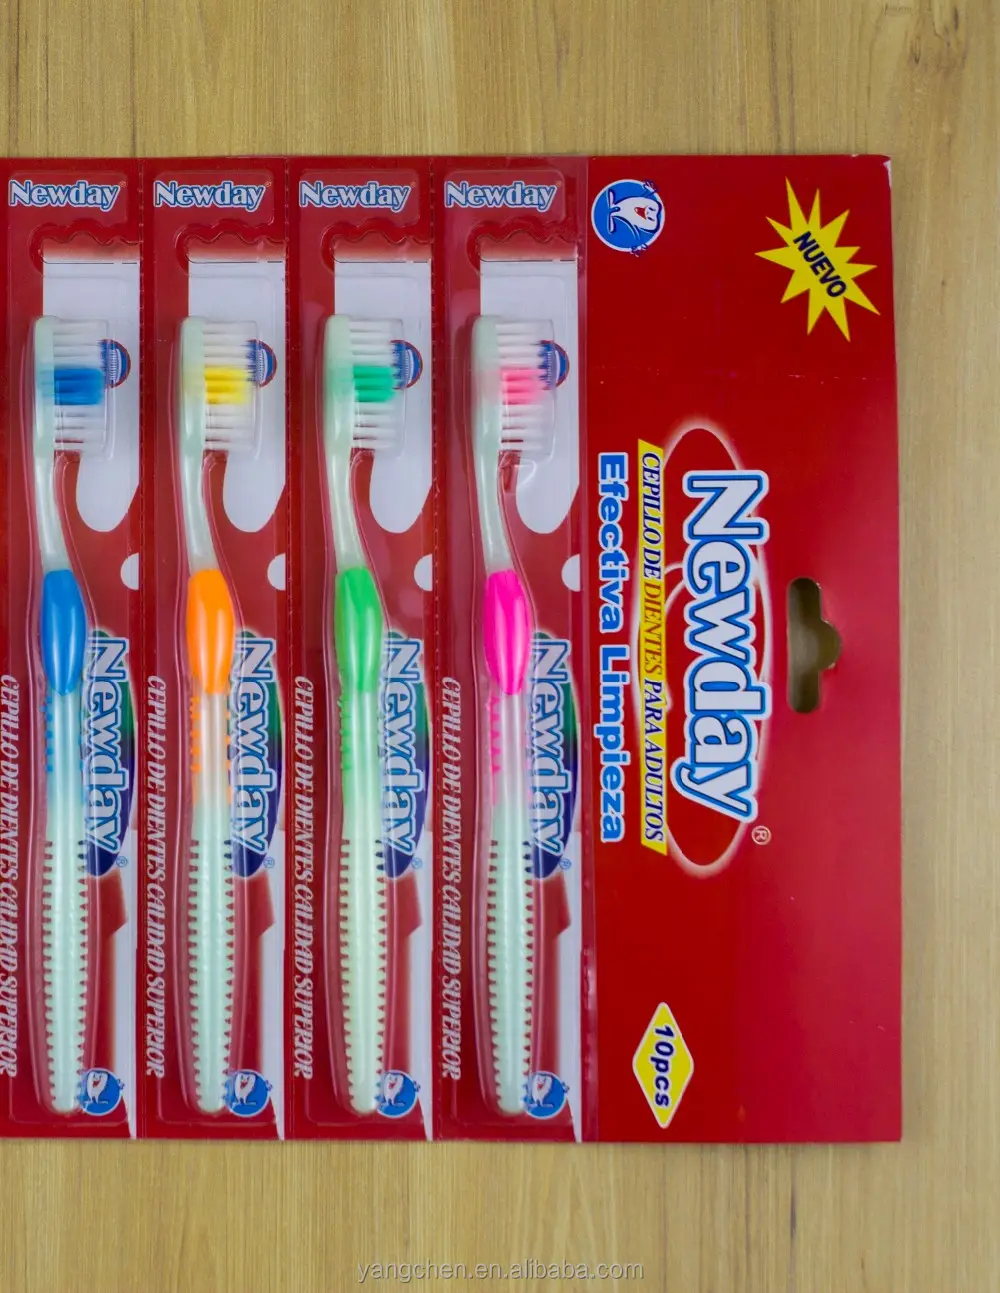 Barato cepillo de dientes para vender/cepillo de dientes de adulto/colgante paquete